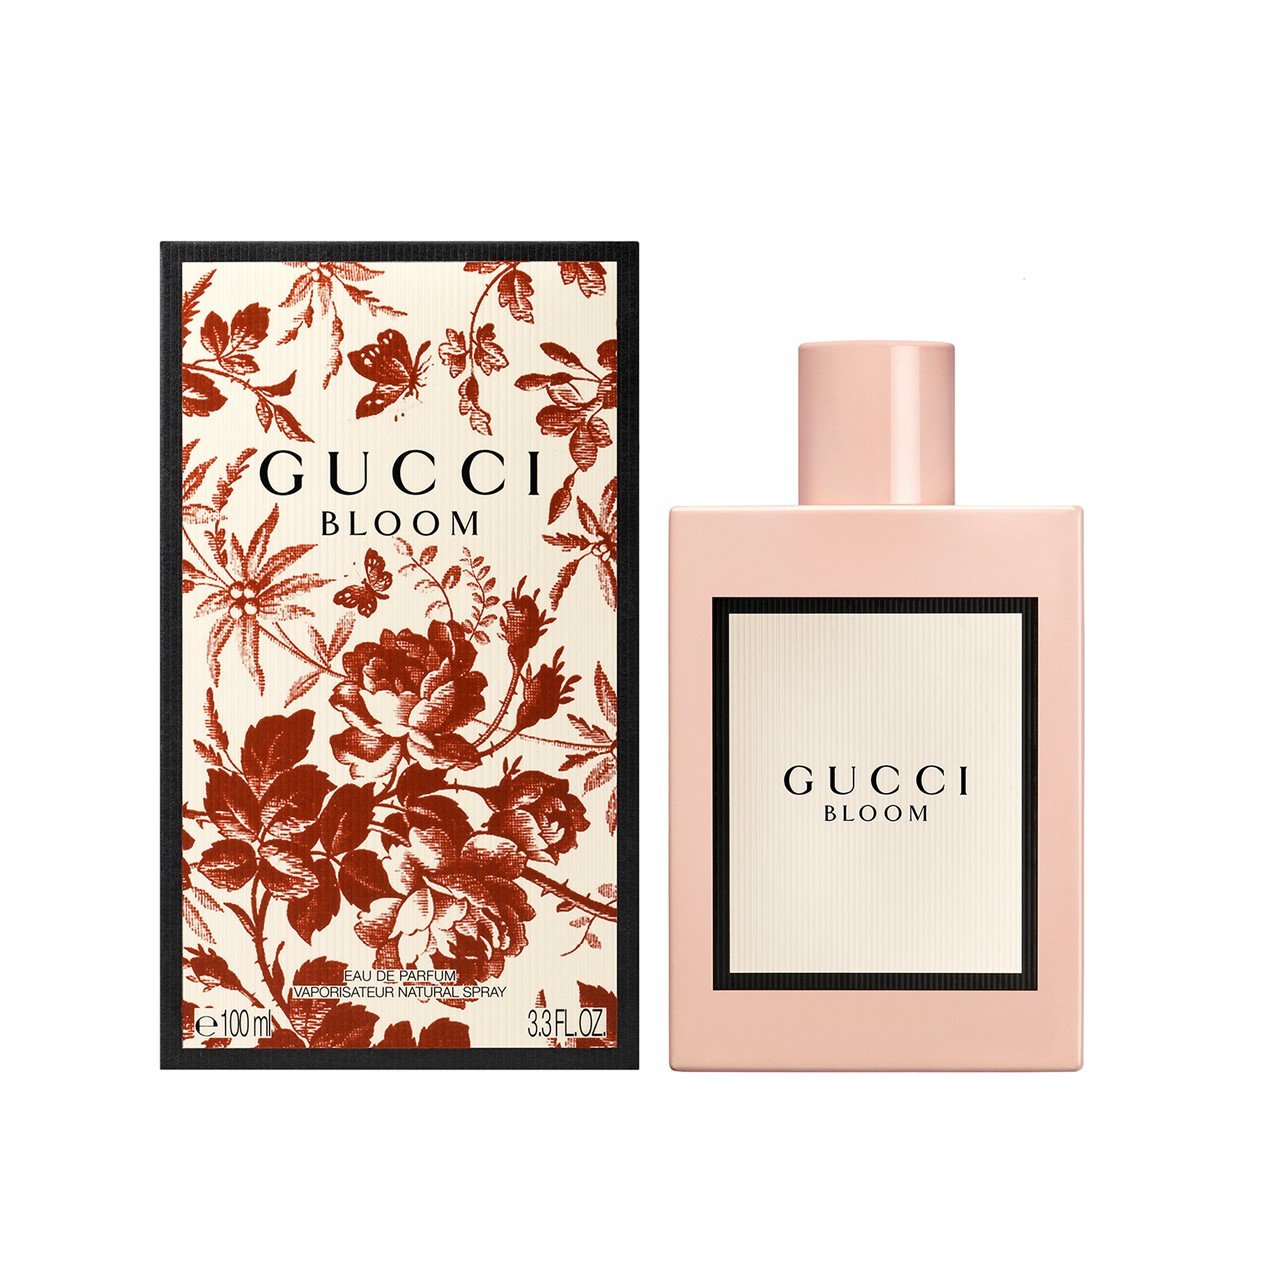 Gucci Bloom Eau de Parfum 100ml (3.4fl oz)